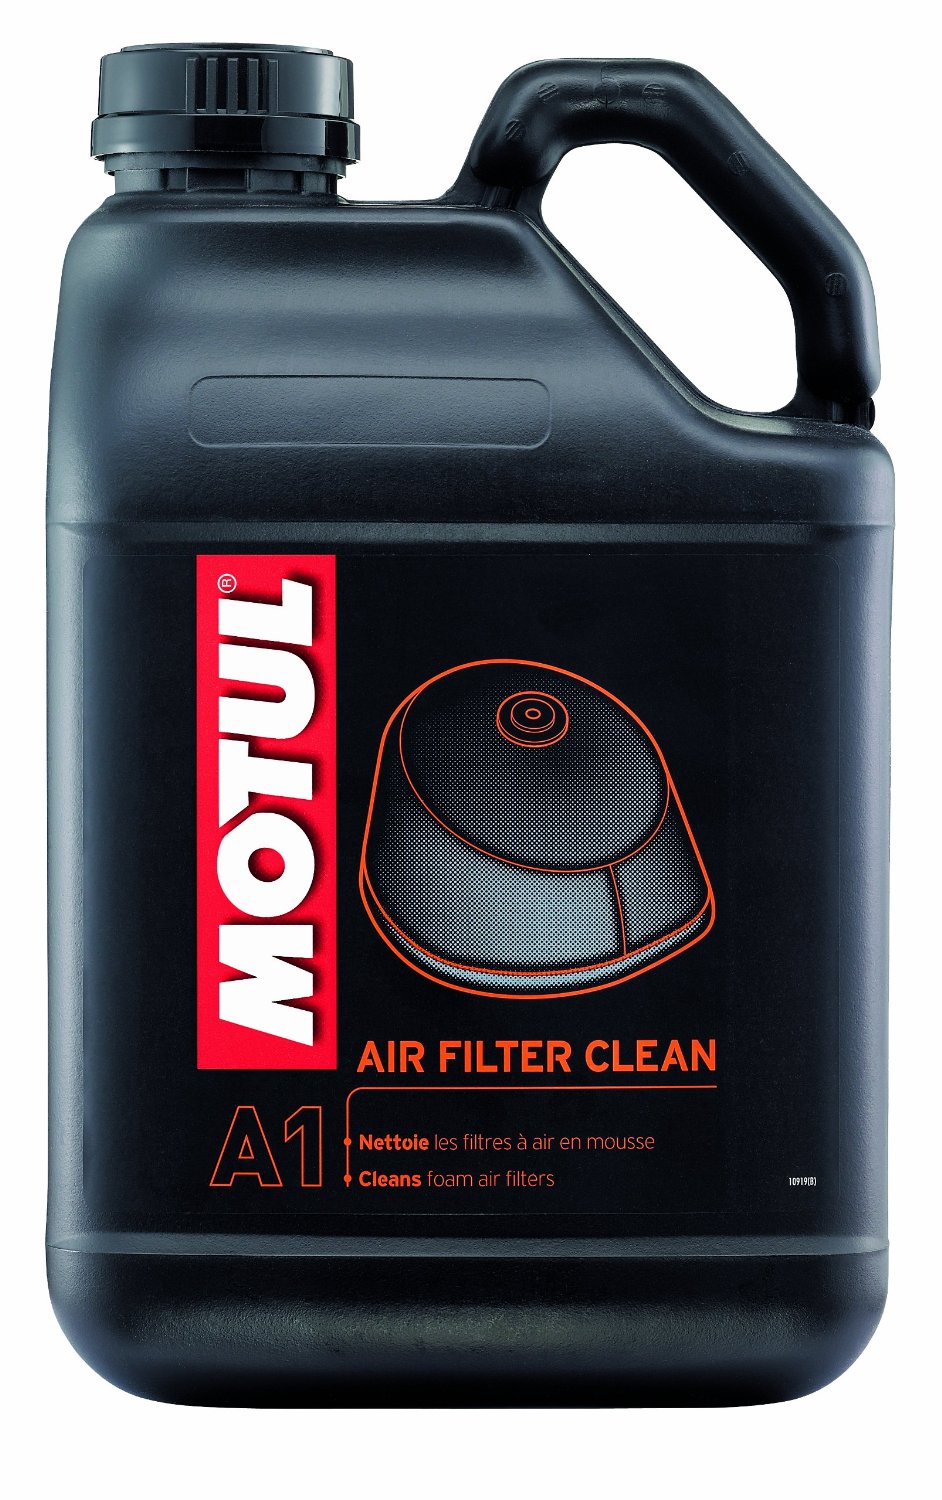 MOTUL AIRFILTER CLEANER A1 AIR FILTER CLEAN 5L CAN